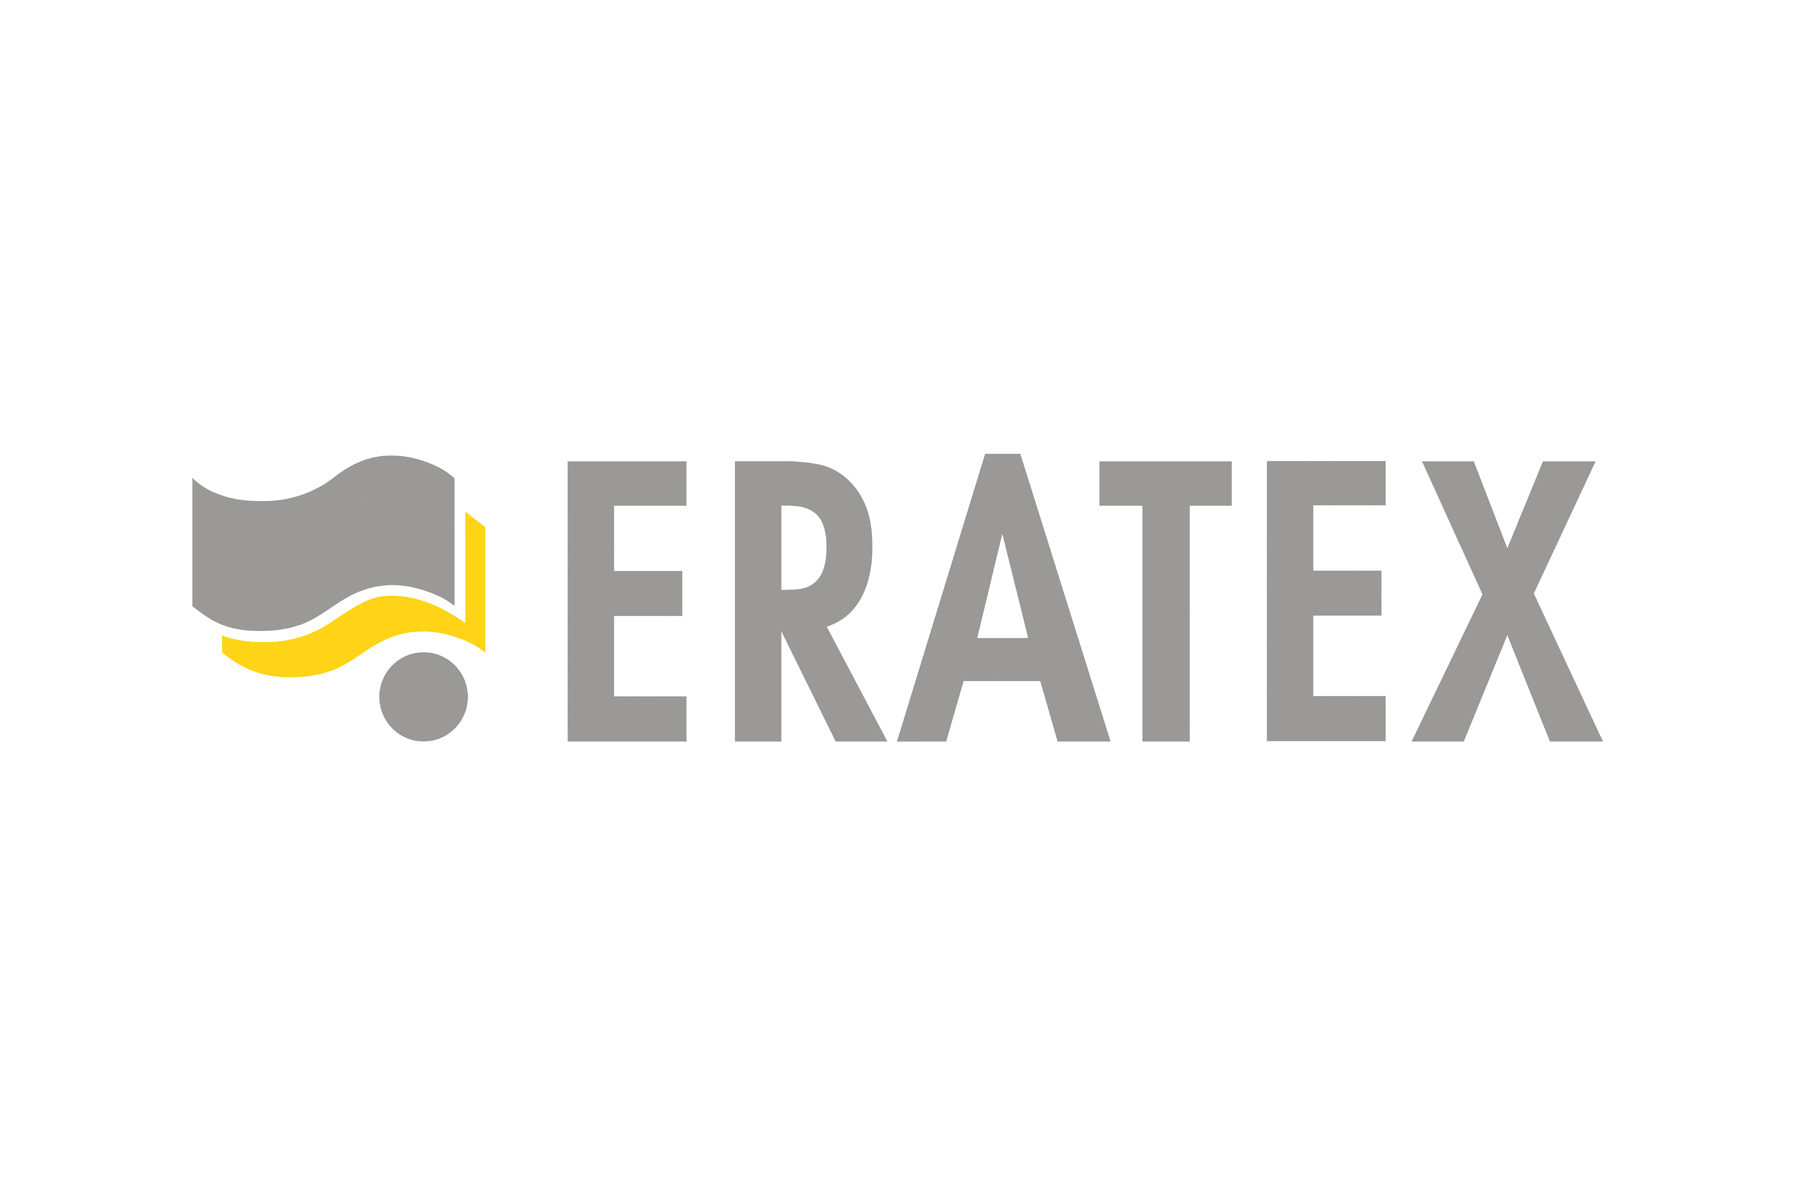 2000, ERATEX